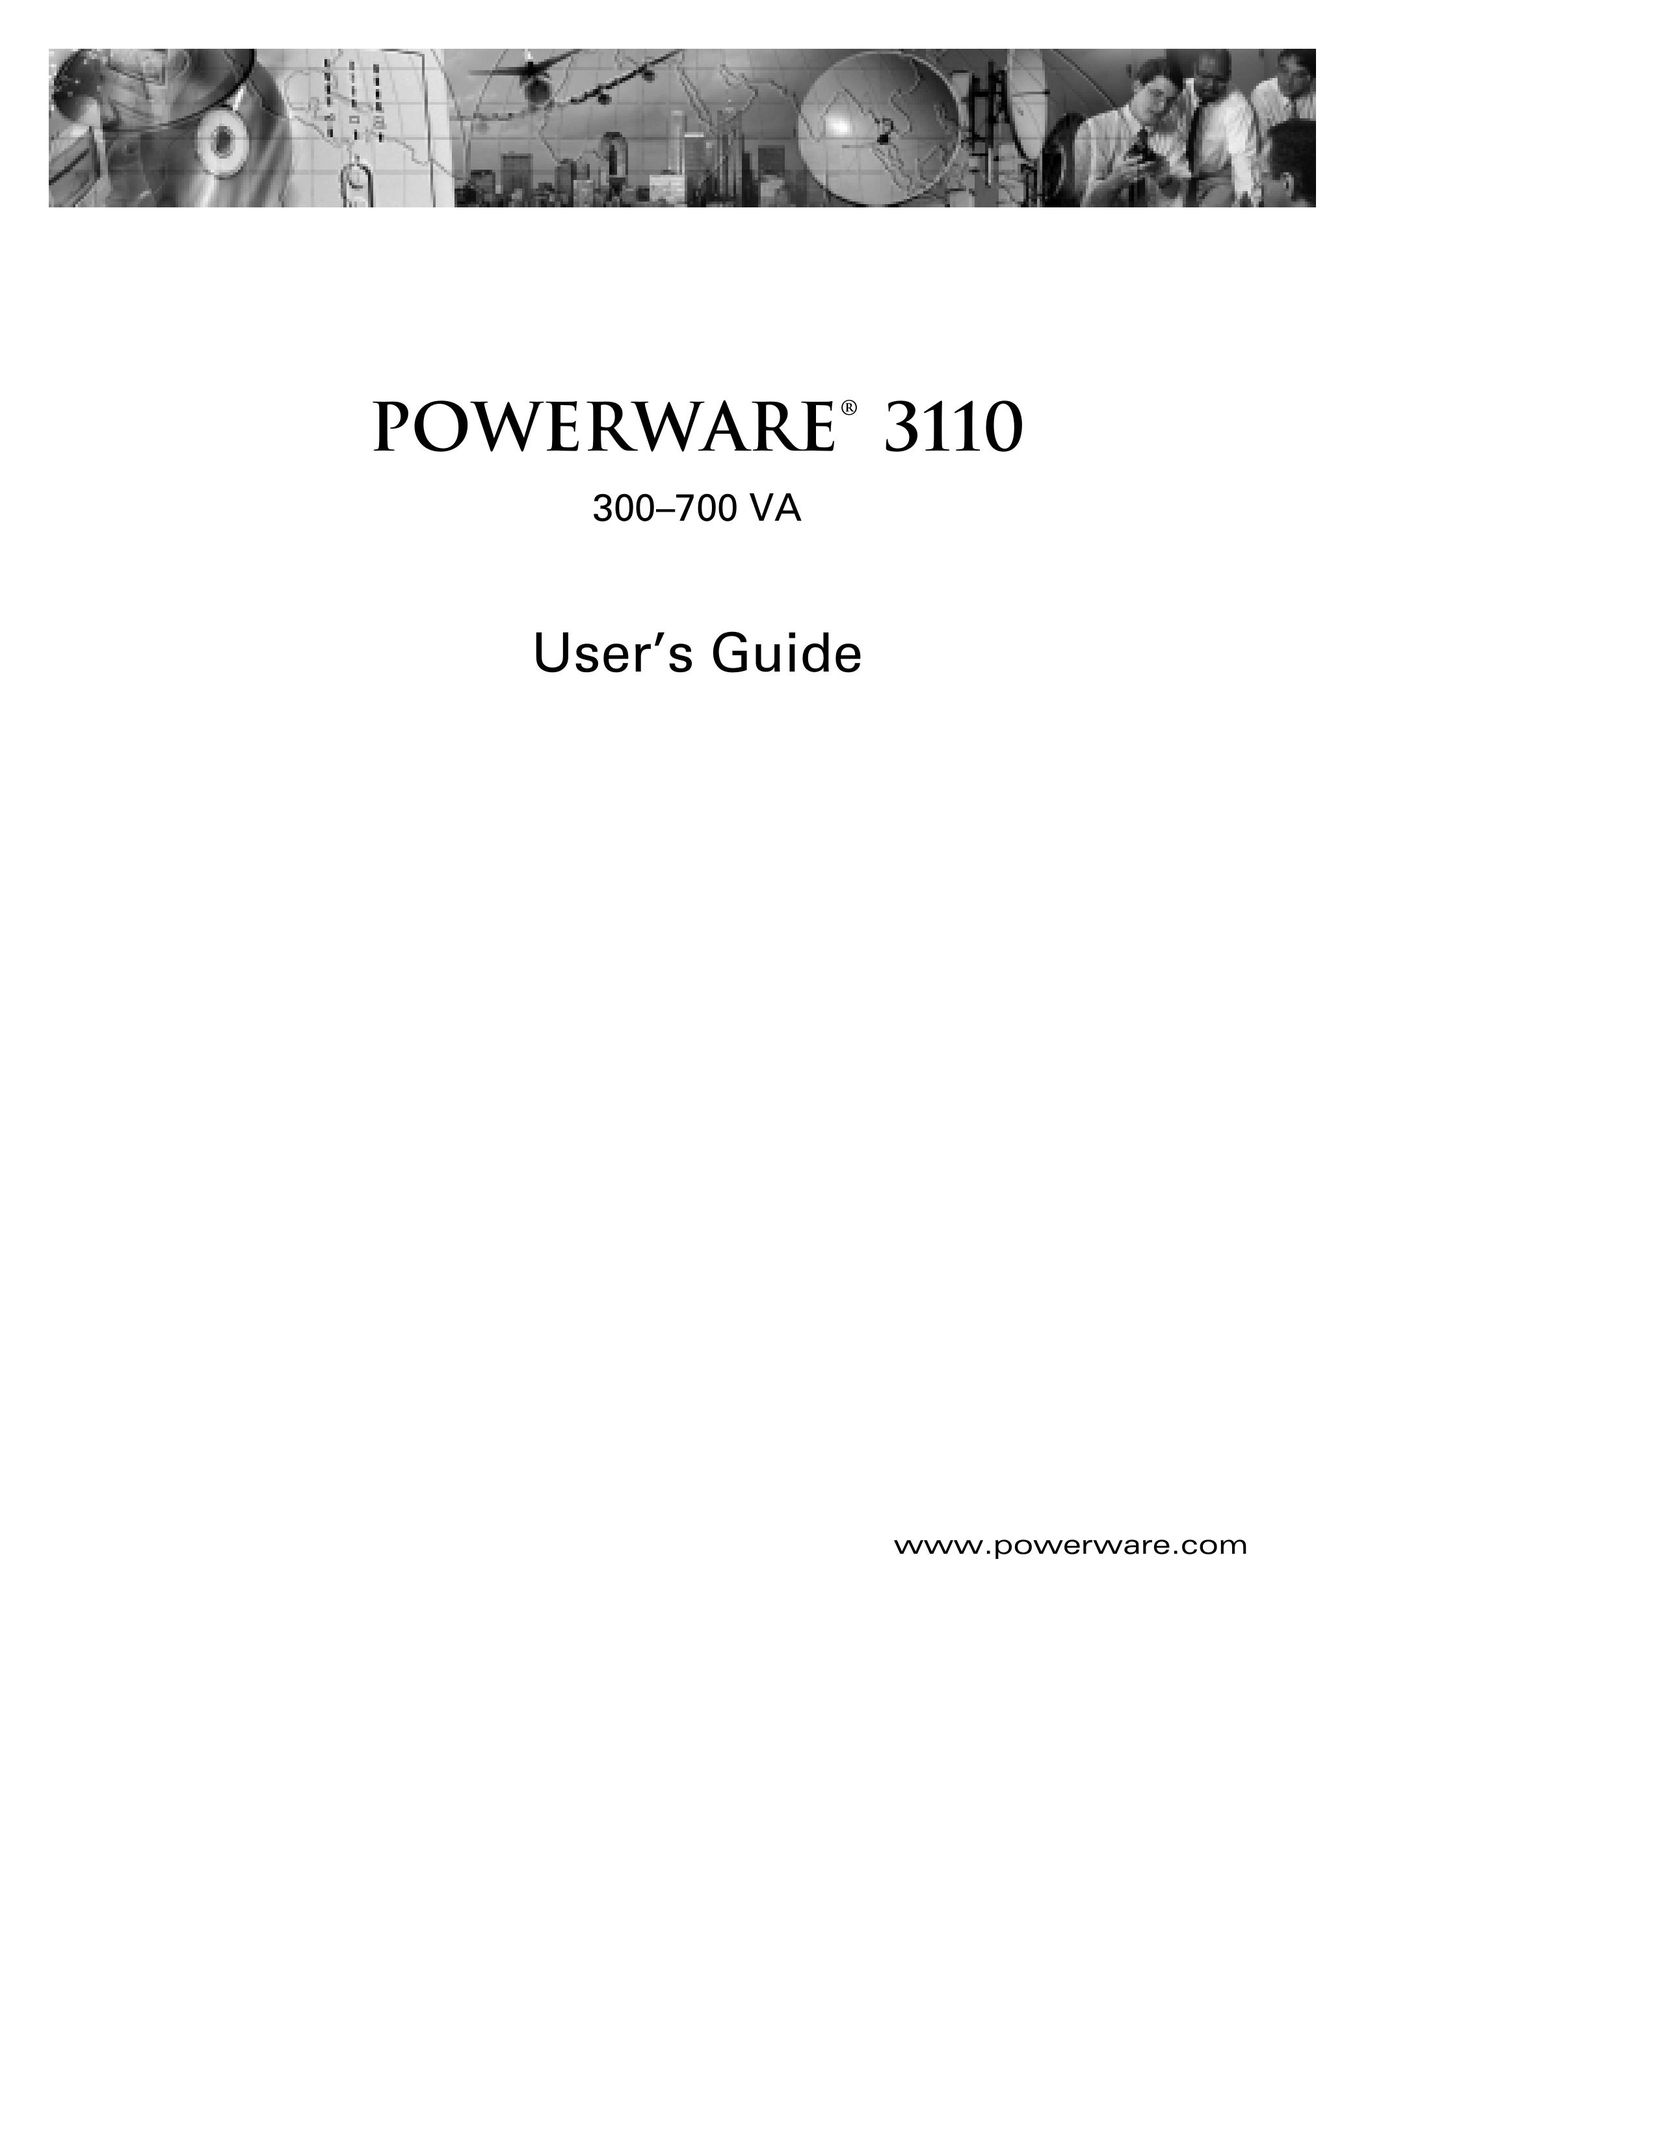 Powerware 700 VA Network Card User Manual